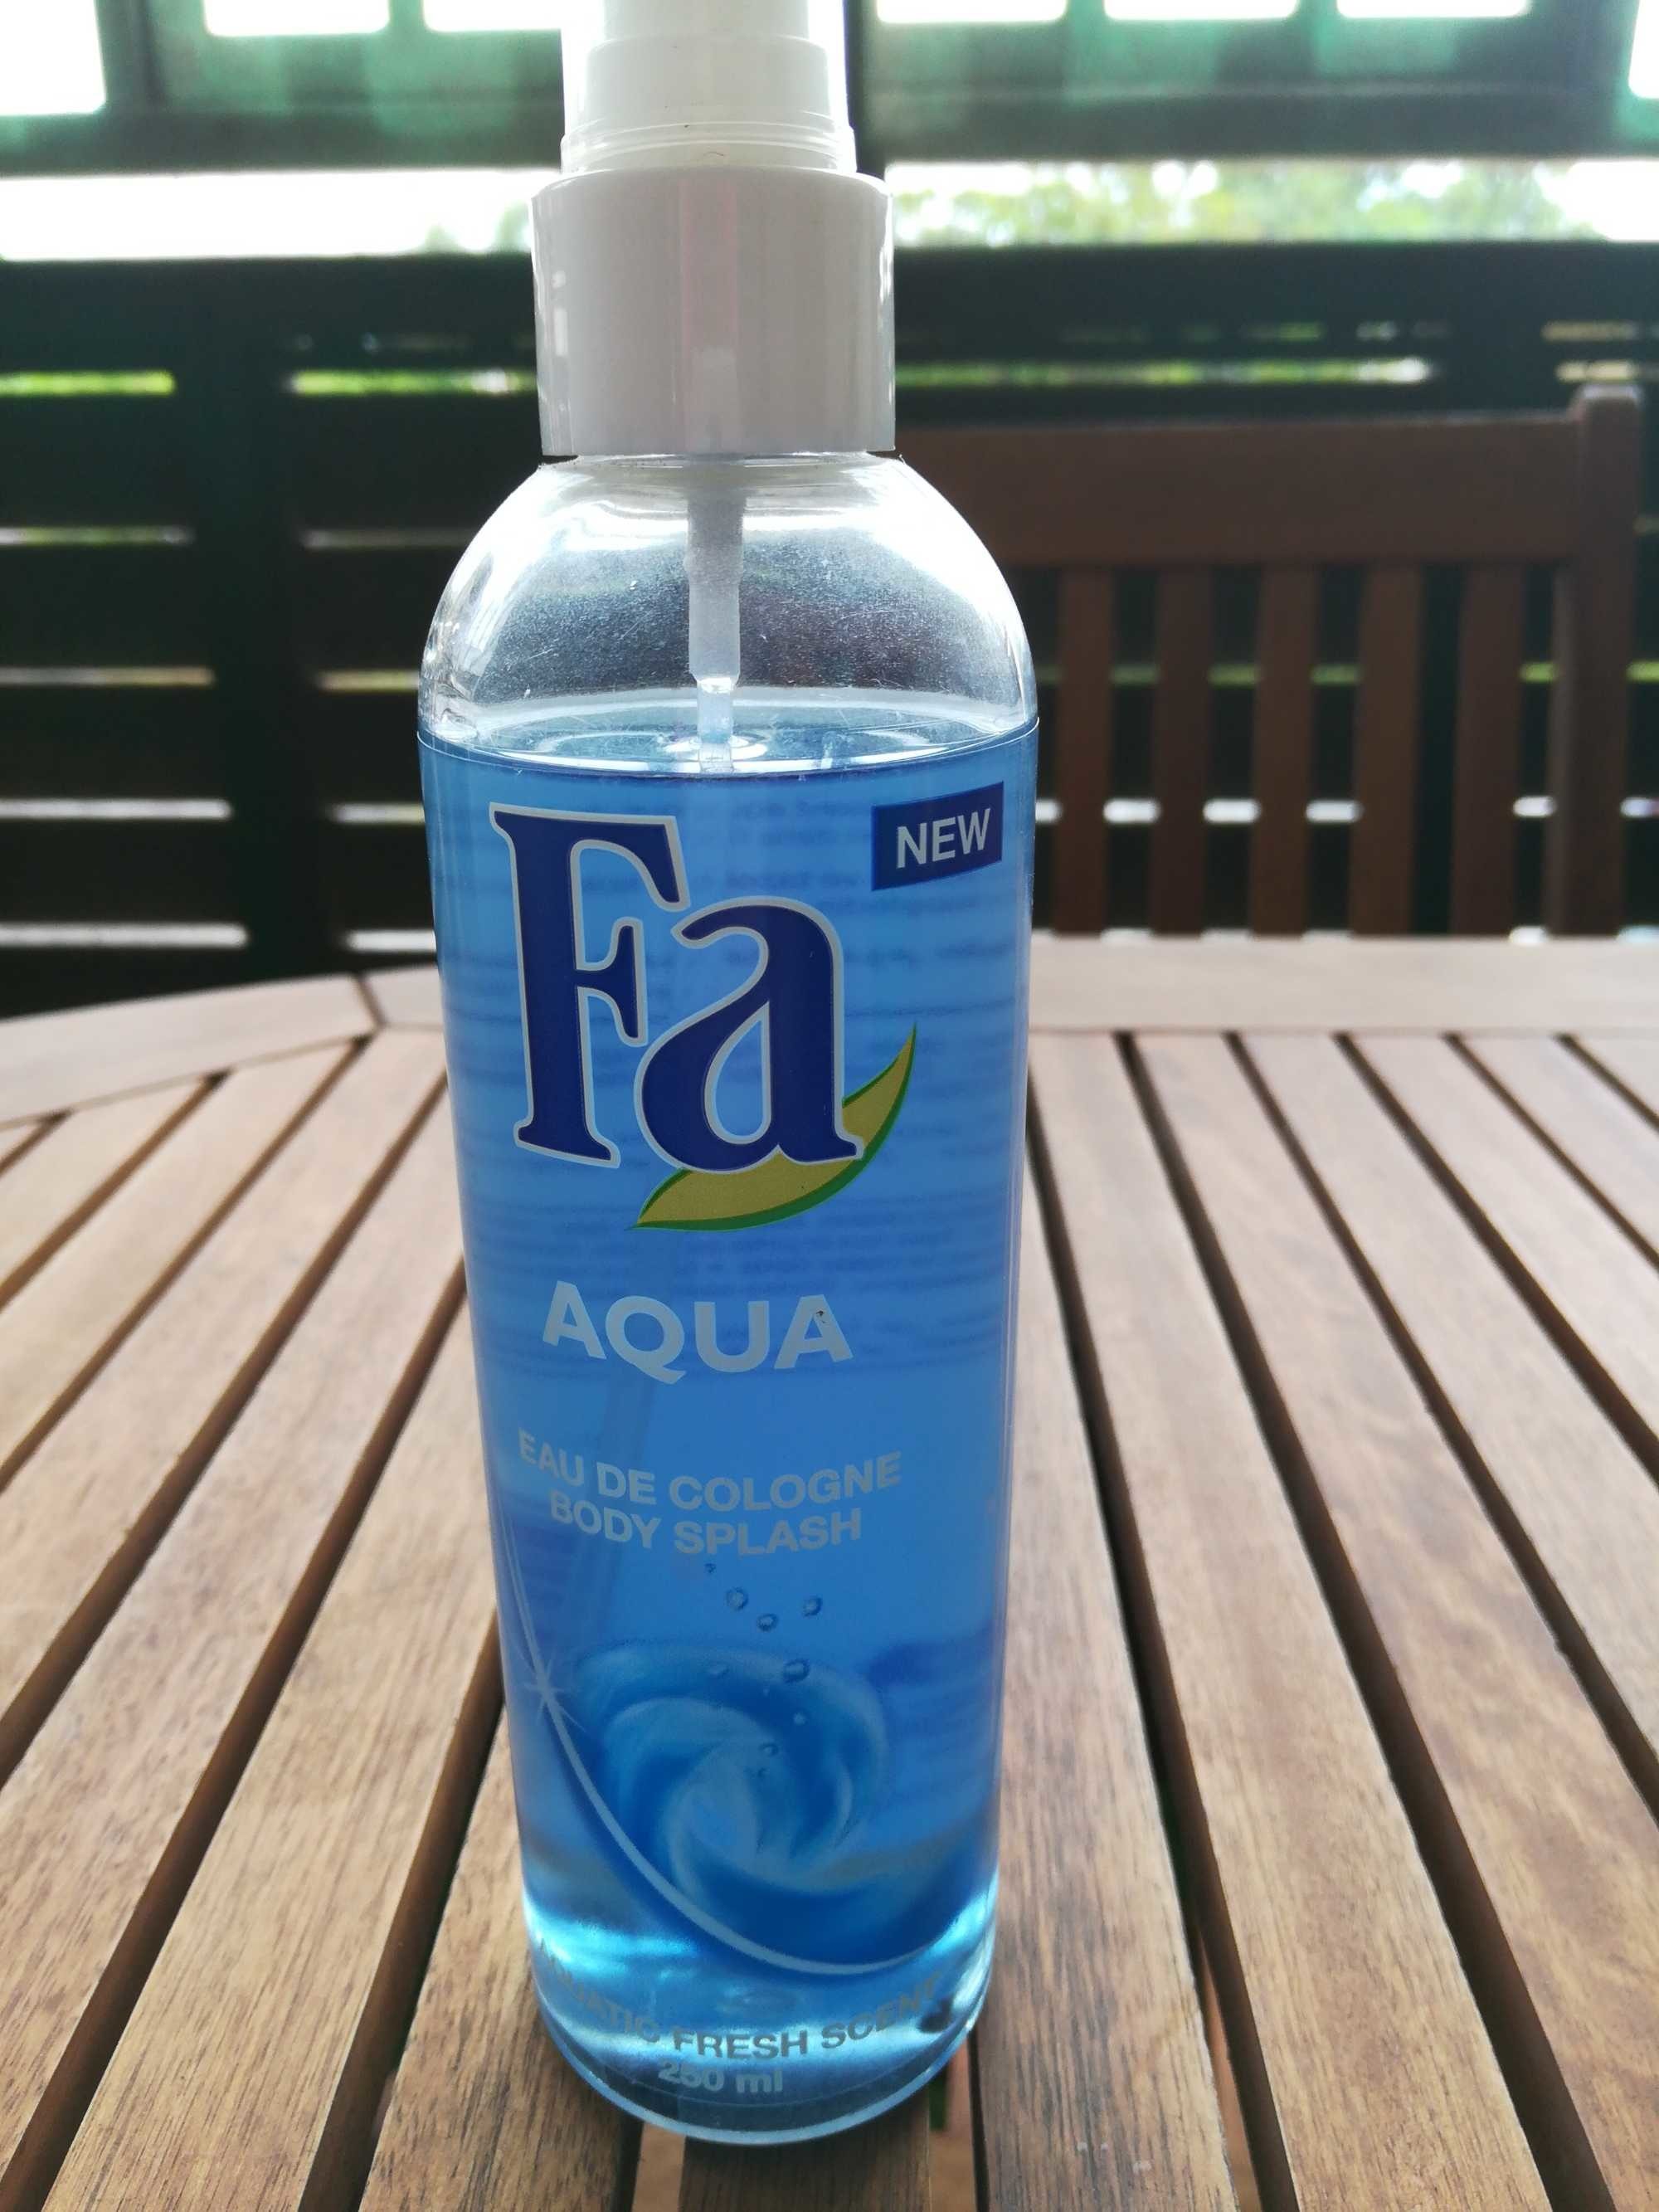 Aqua eau de cologne - Product - fr